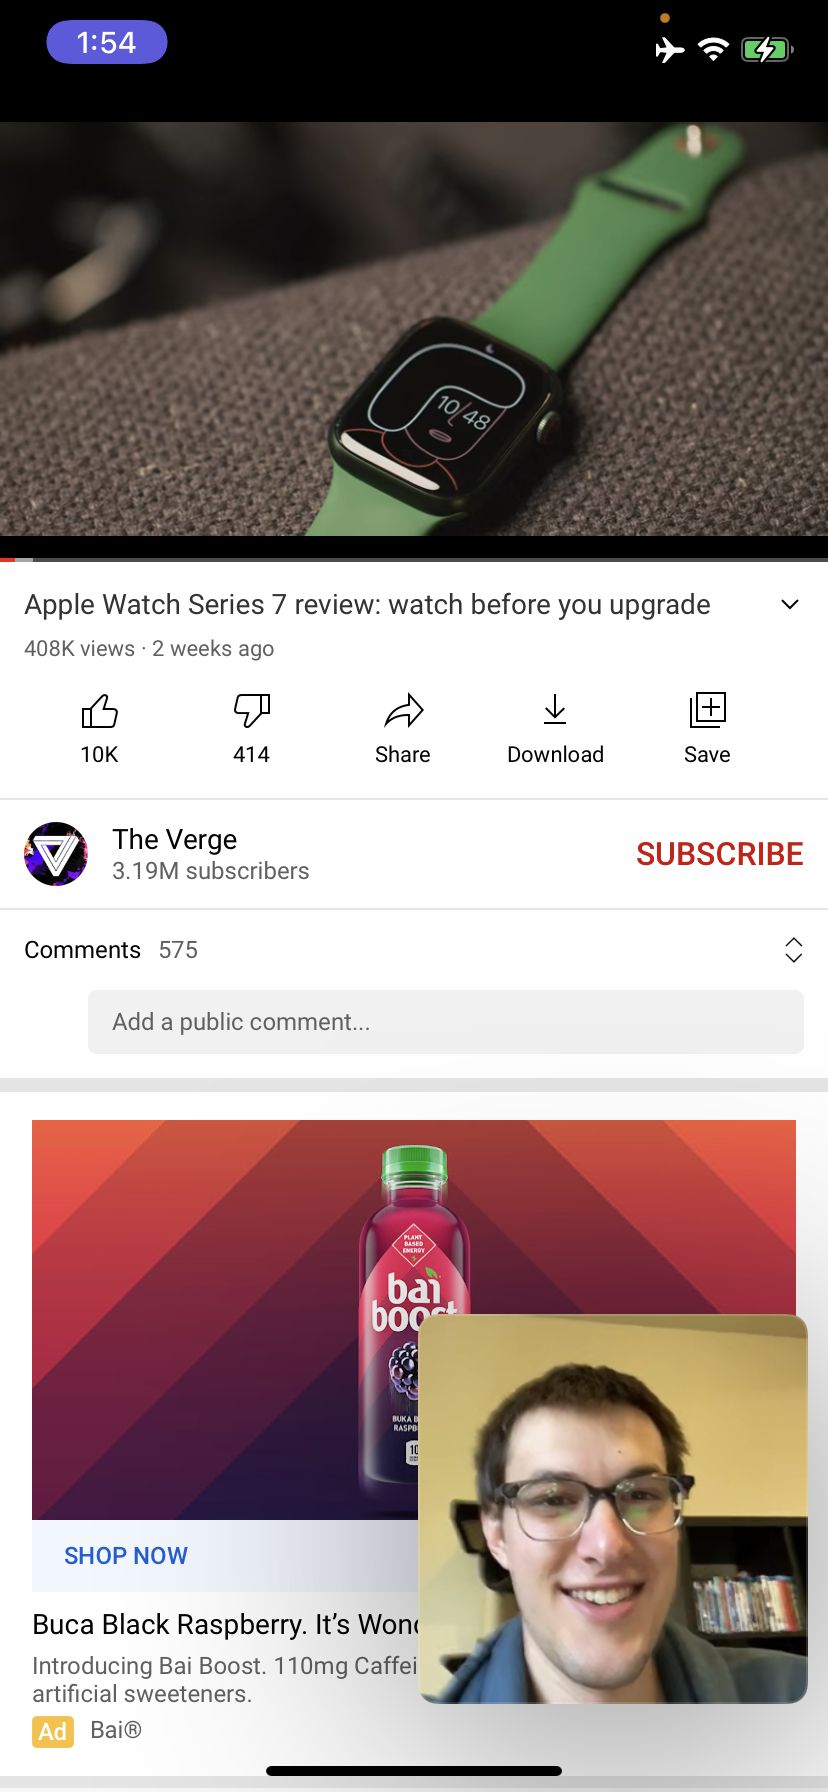 SharePlay le permite ver los mismos videos de YouTube al mismo tiempo.